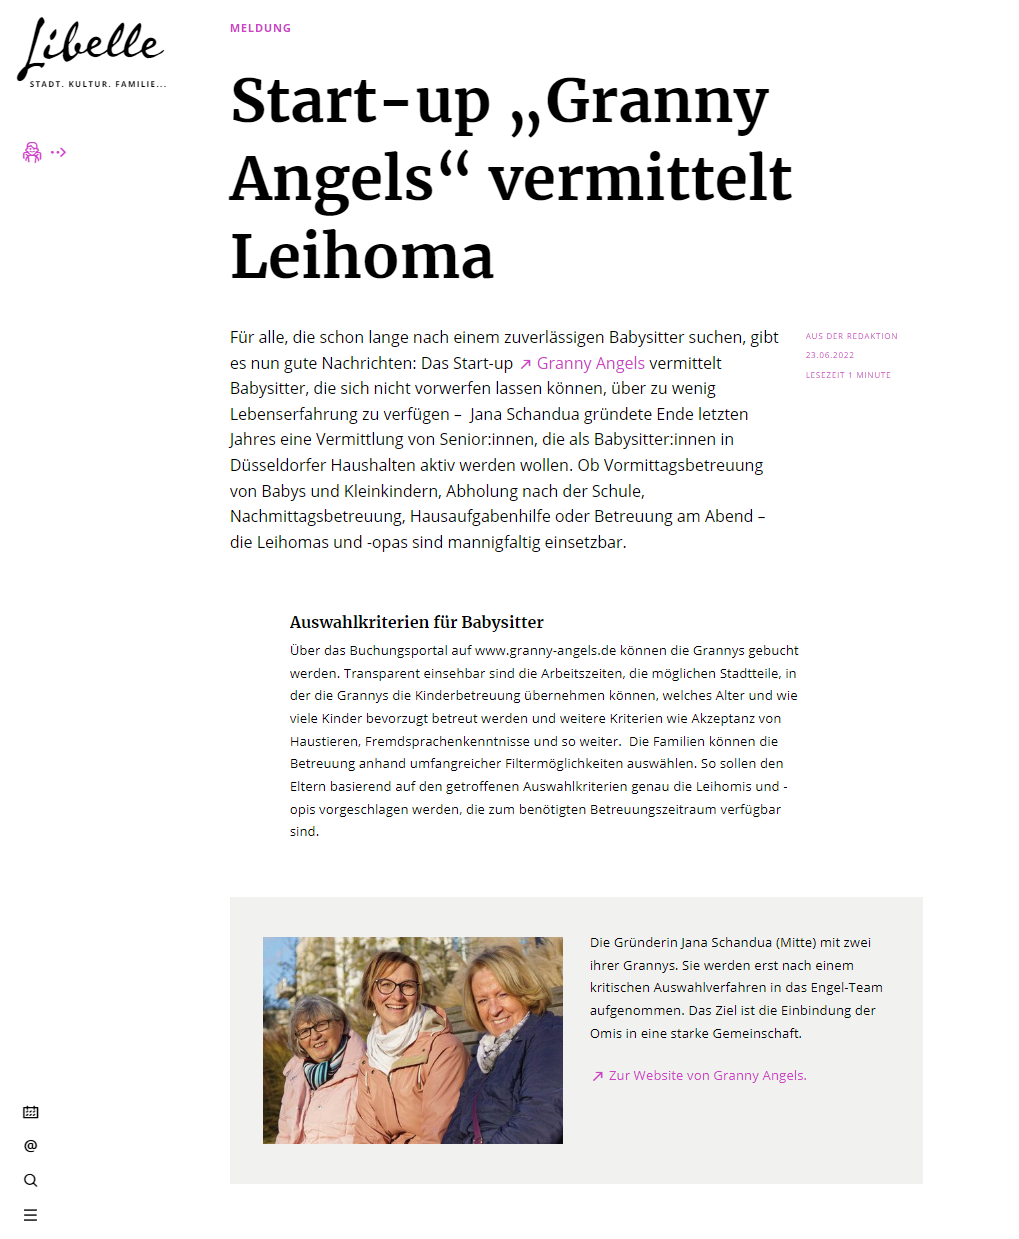 Start-Up "Granny Angels" vermittelt Leihoma - Beitrag auf WAZ.de